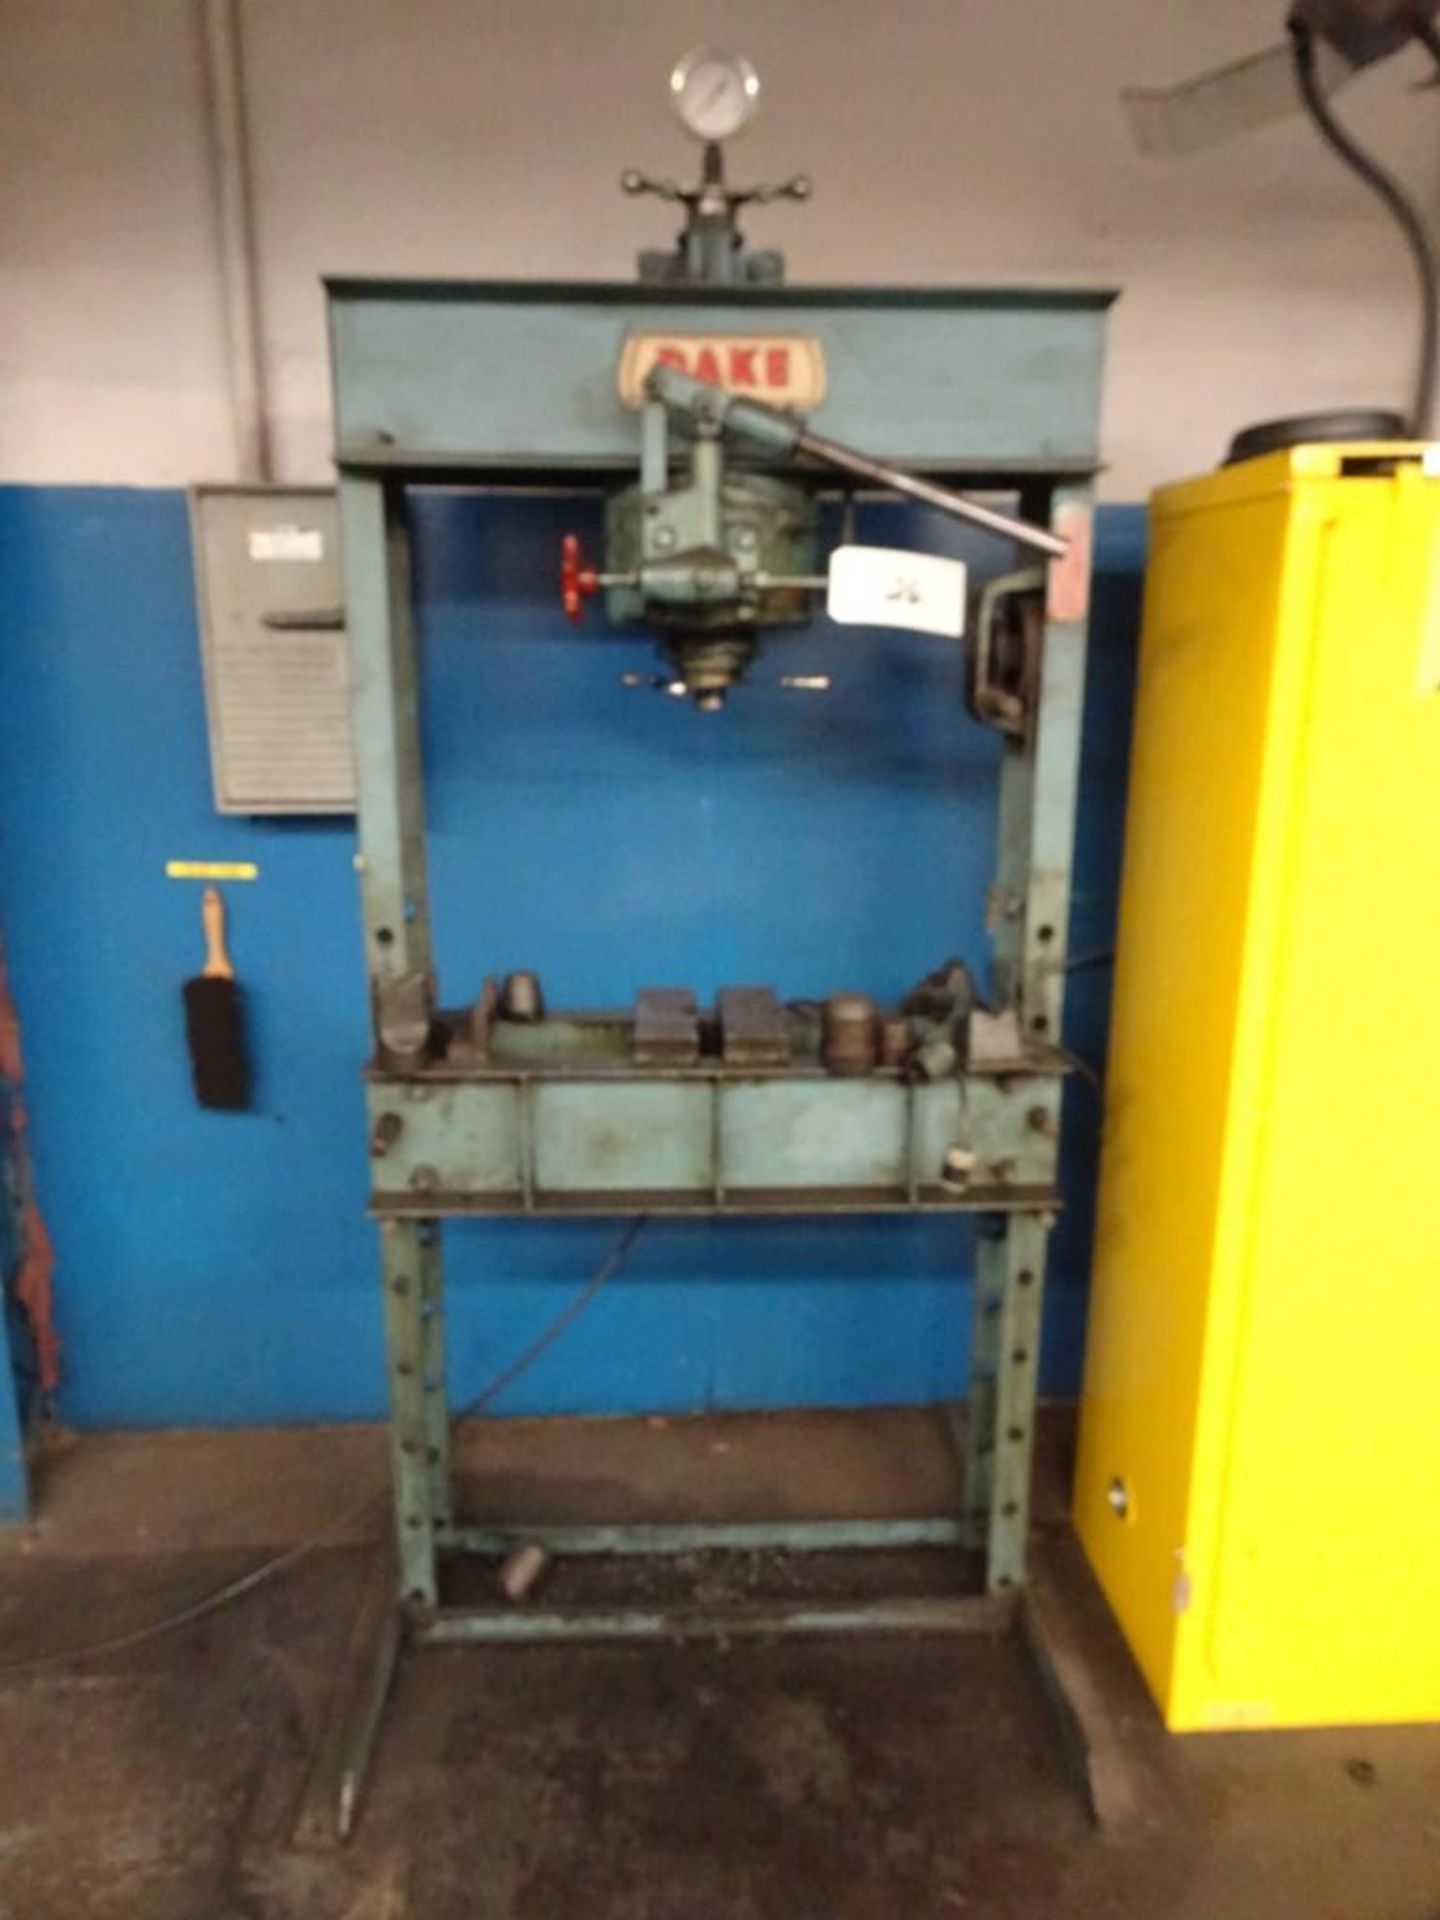 Dake Hydraulic Press